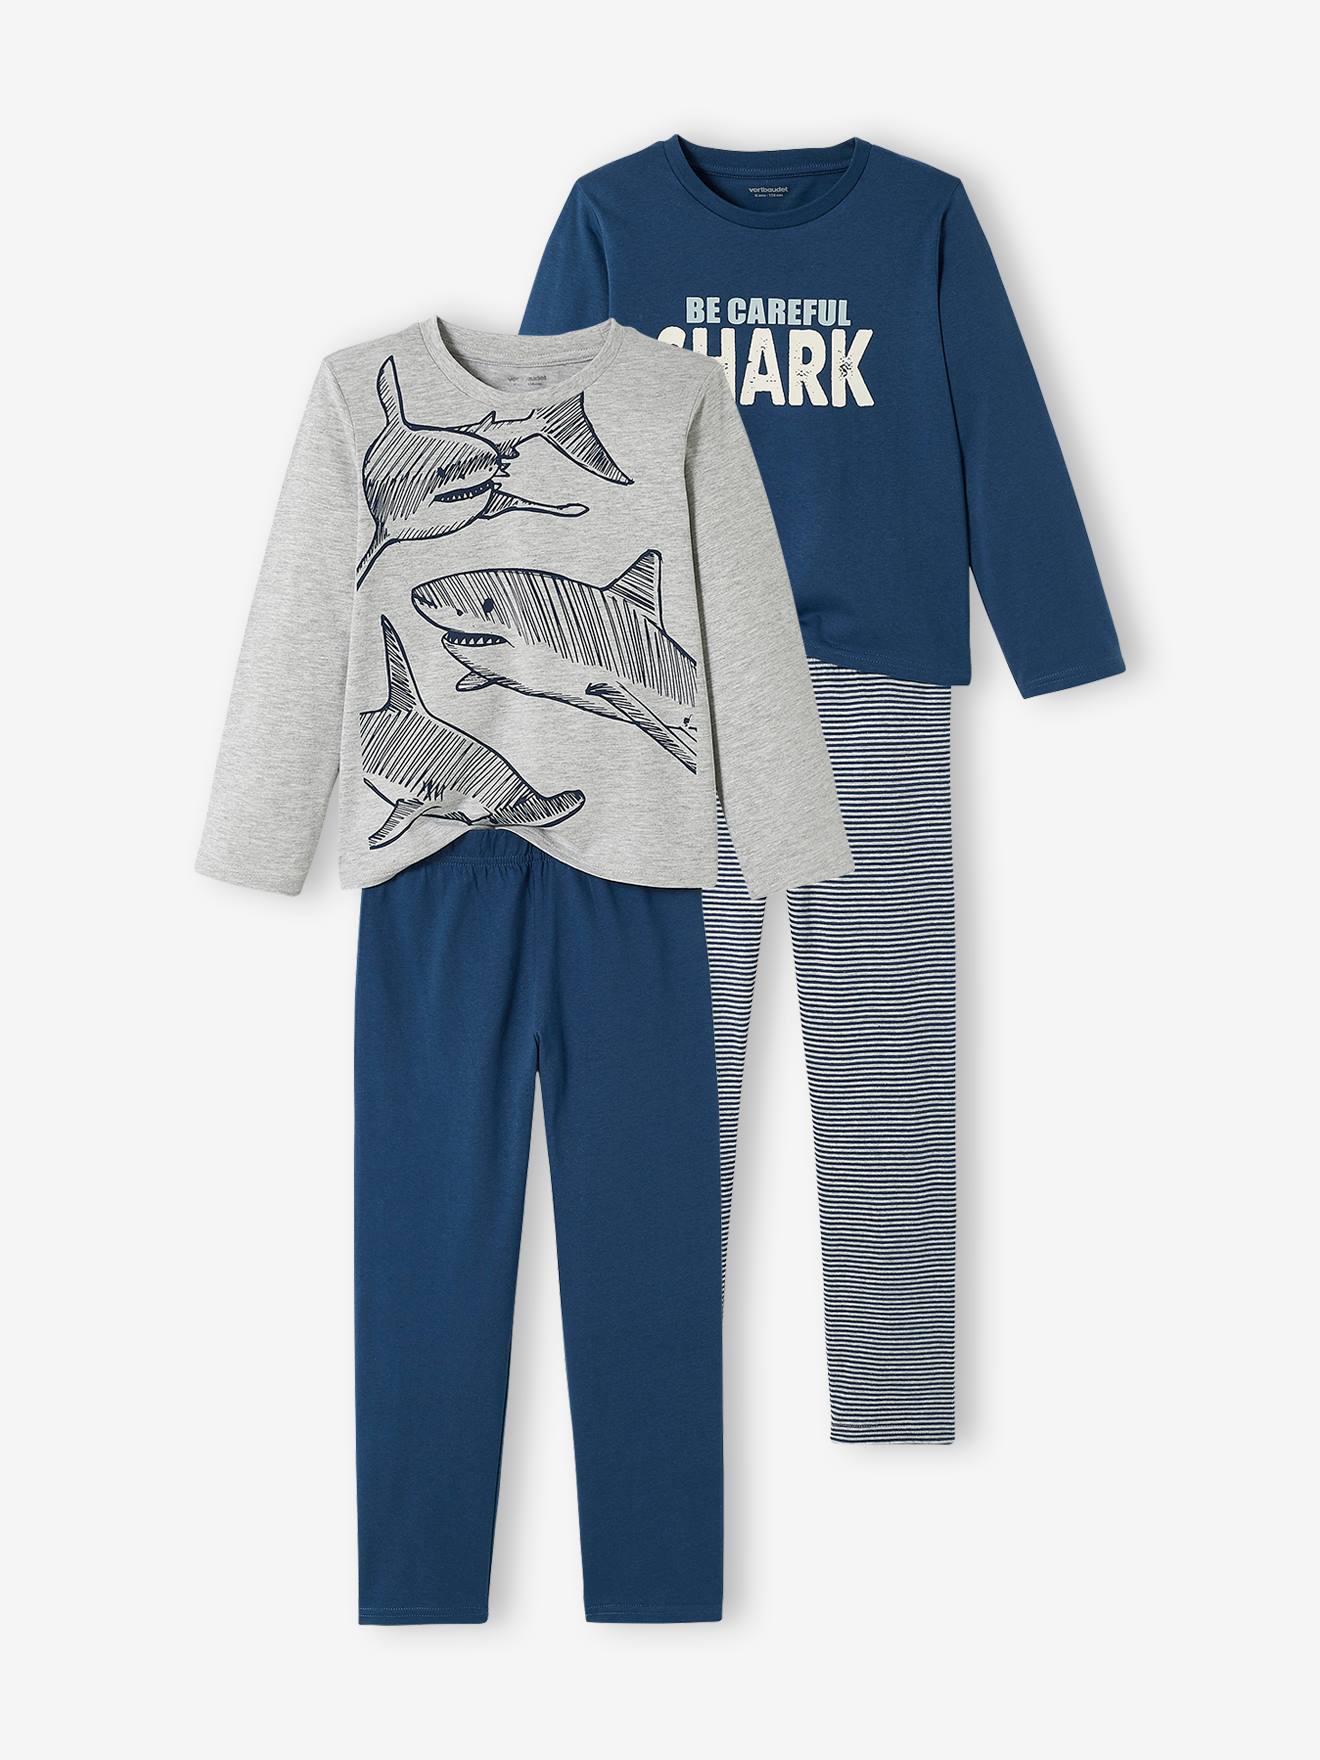 OTTO Jungen Kleidung Nachtwäsche Schlafanzüge Pyjama » Pyjama oder dunkelblau Gr.98 104 110 116 entspricht 3 4 5 6 Jahre Jungen Schlafanzug« 